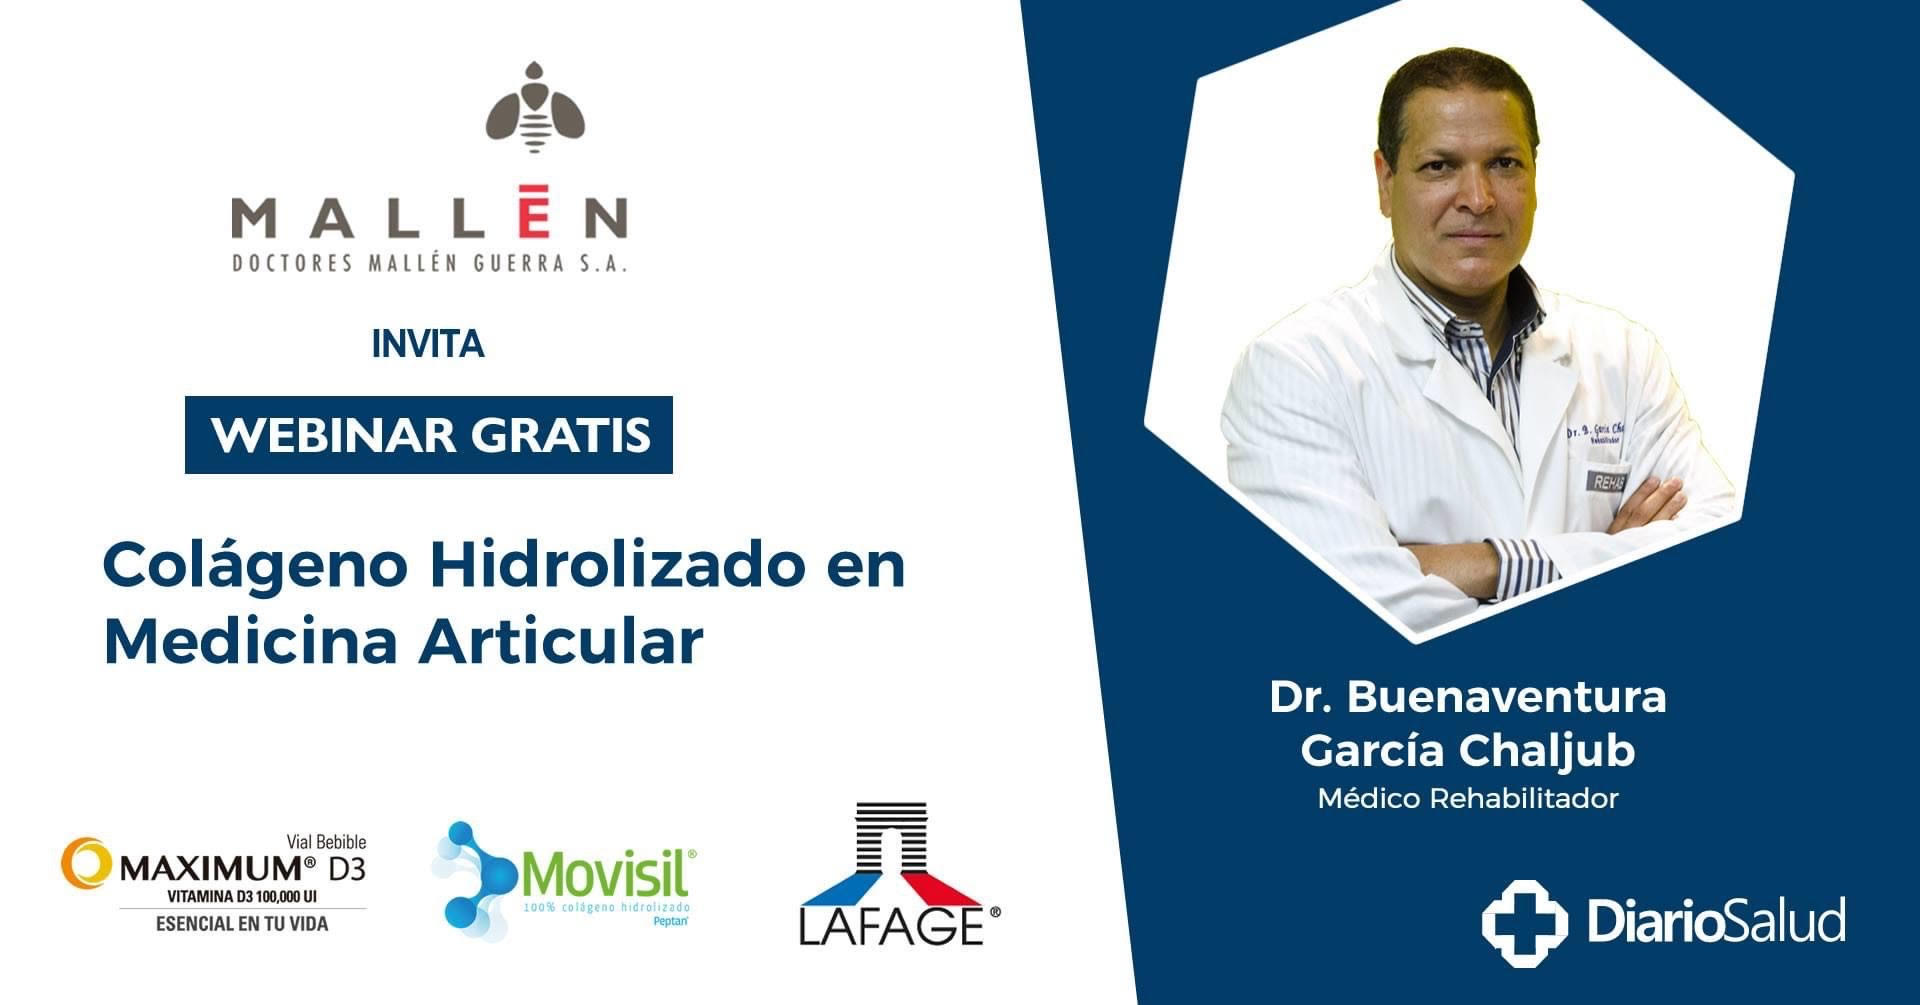 Doctores Mallén realiza con éxito  webinar “Colágeno Hidrolizado en Medicina Articular” 